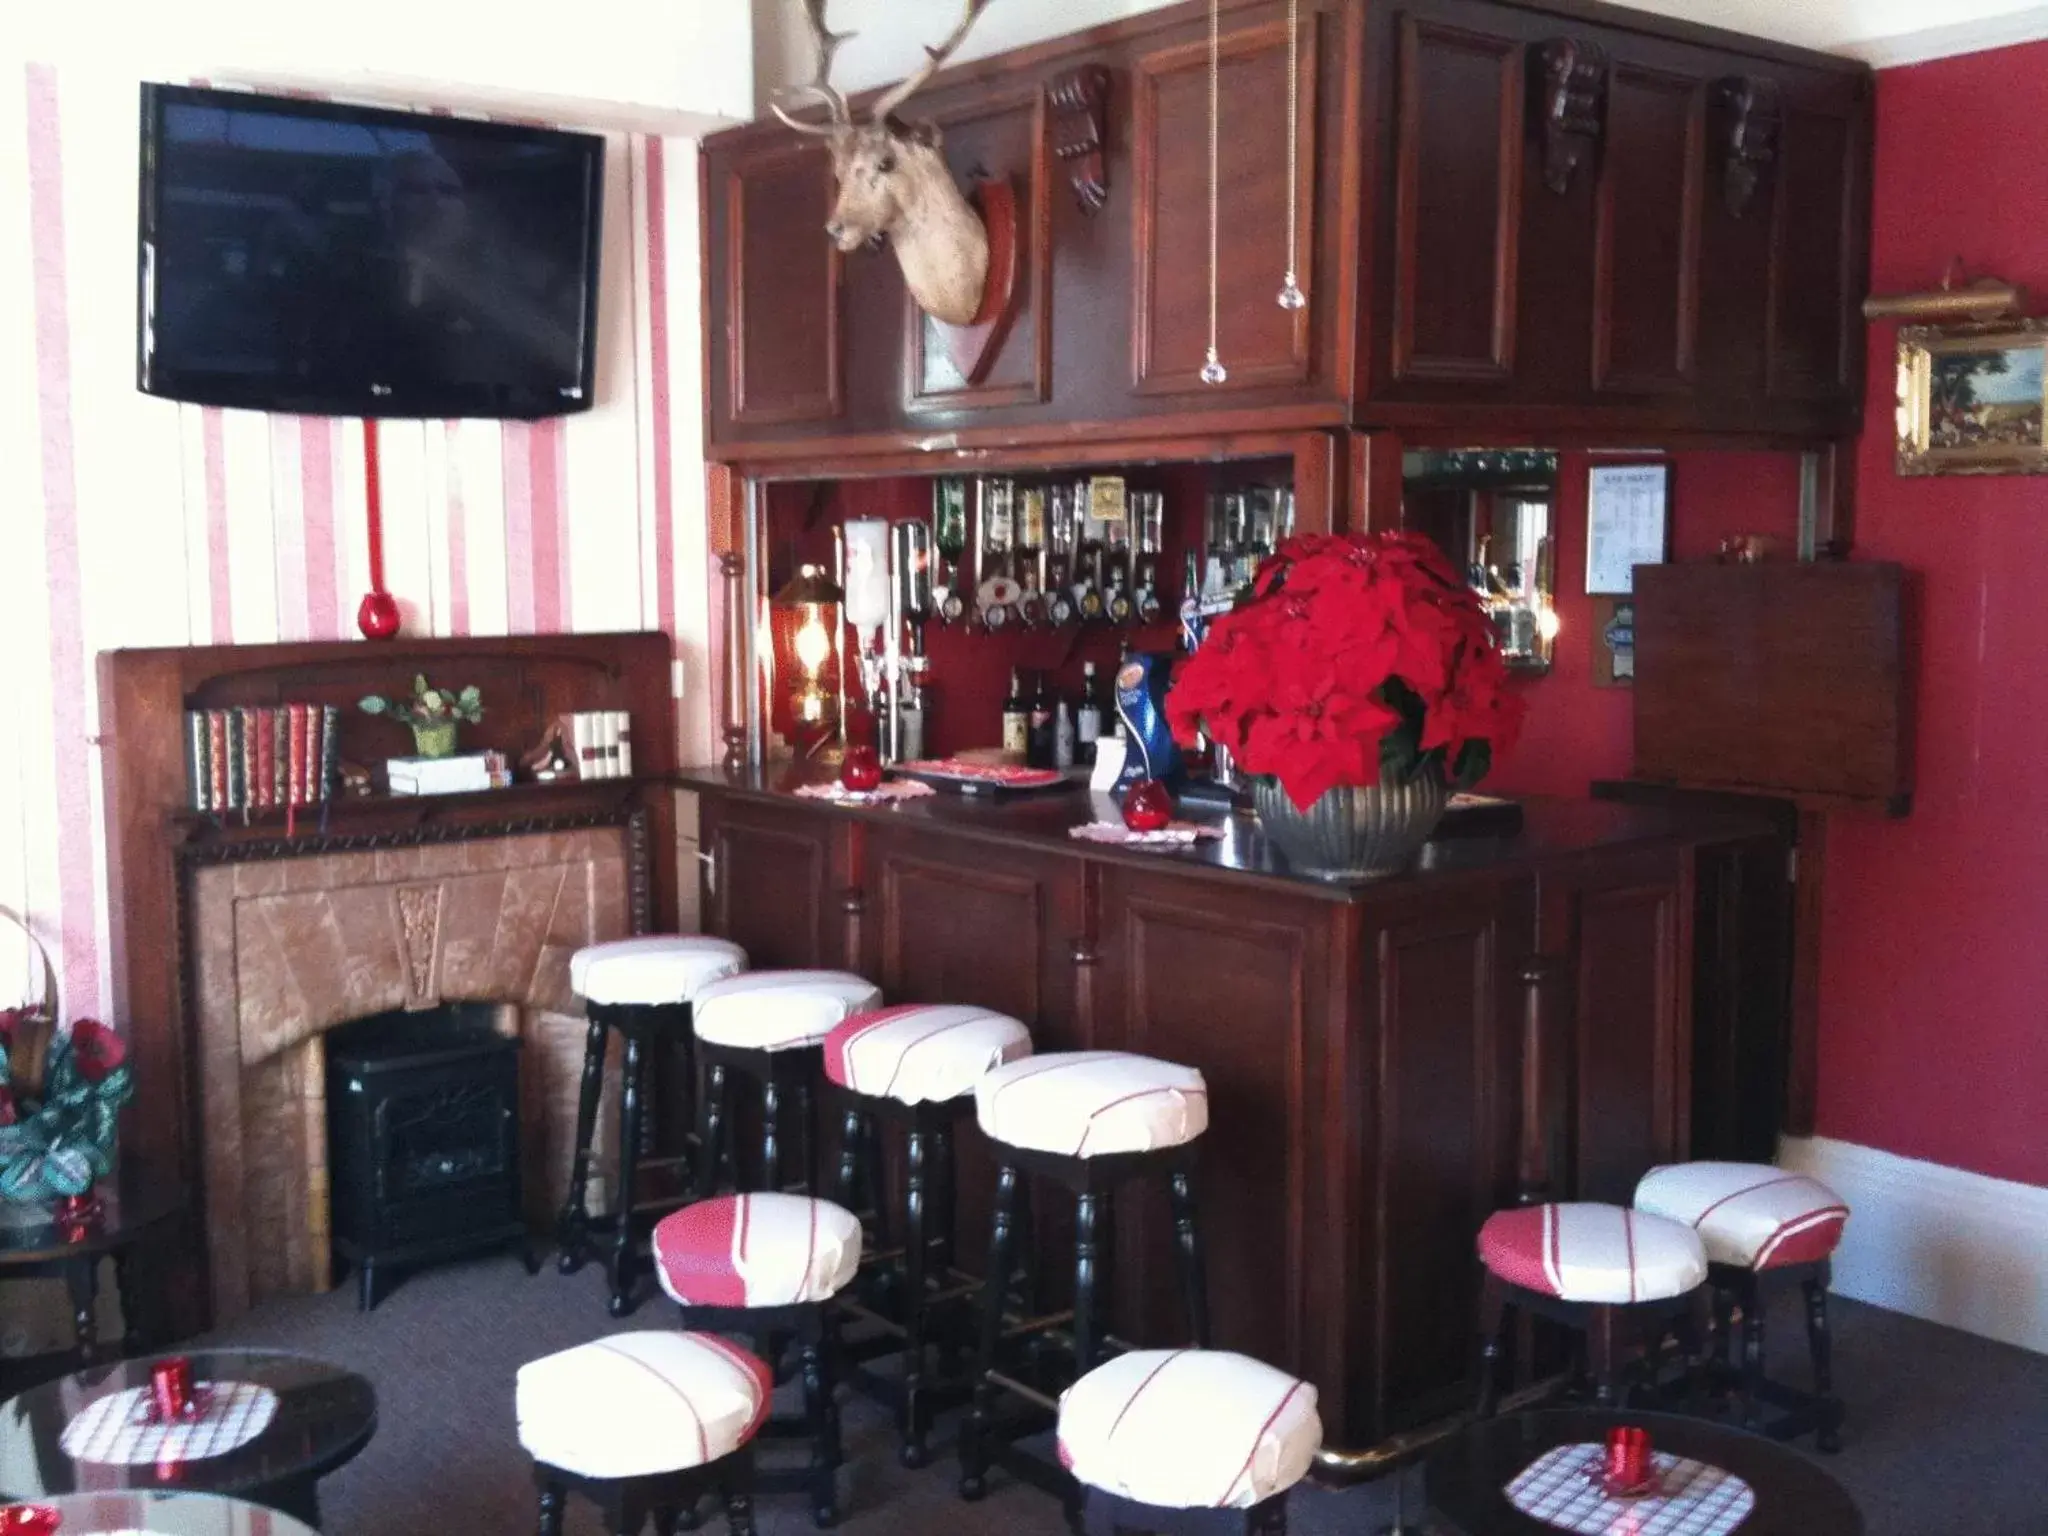 Coffee/tea facilities, Lounge/Bar in Balmoral Lodge Hotel